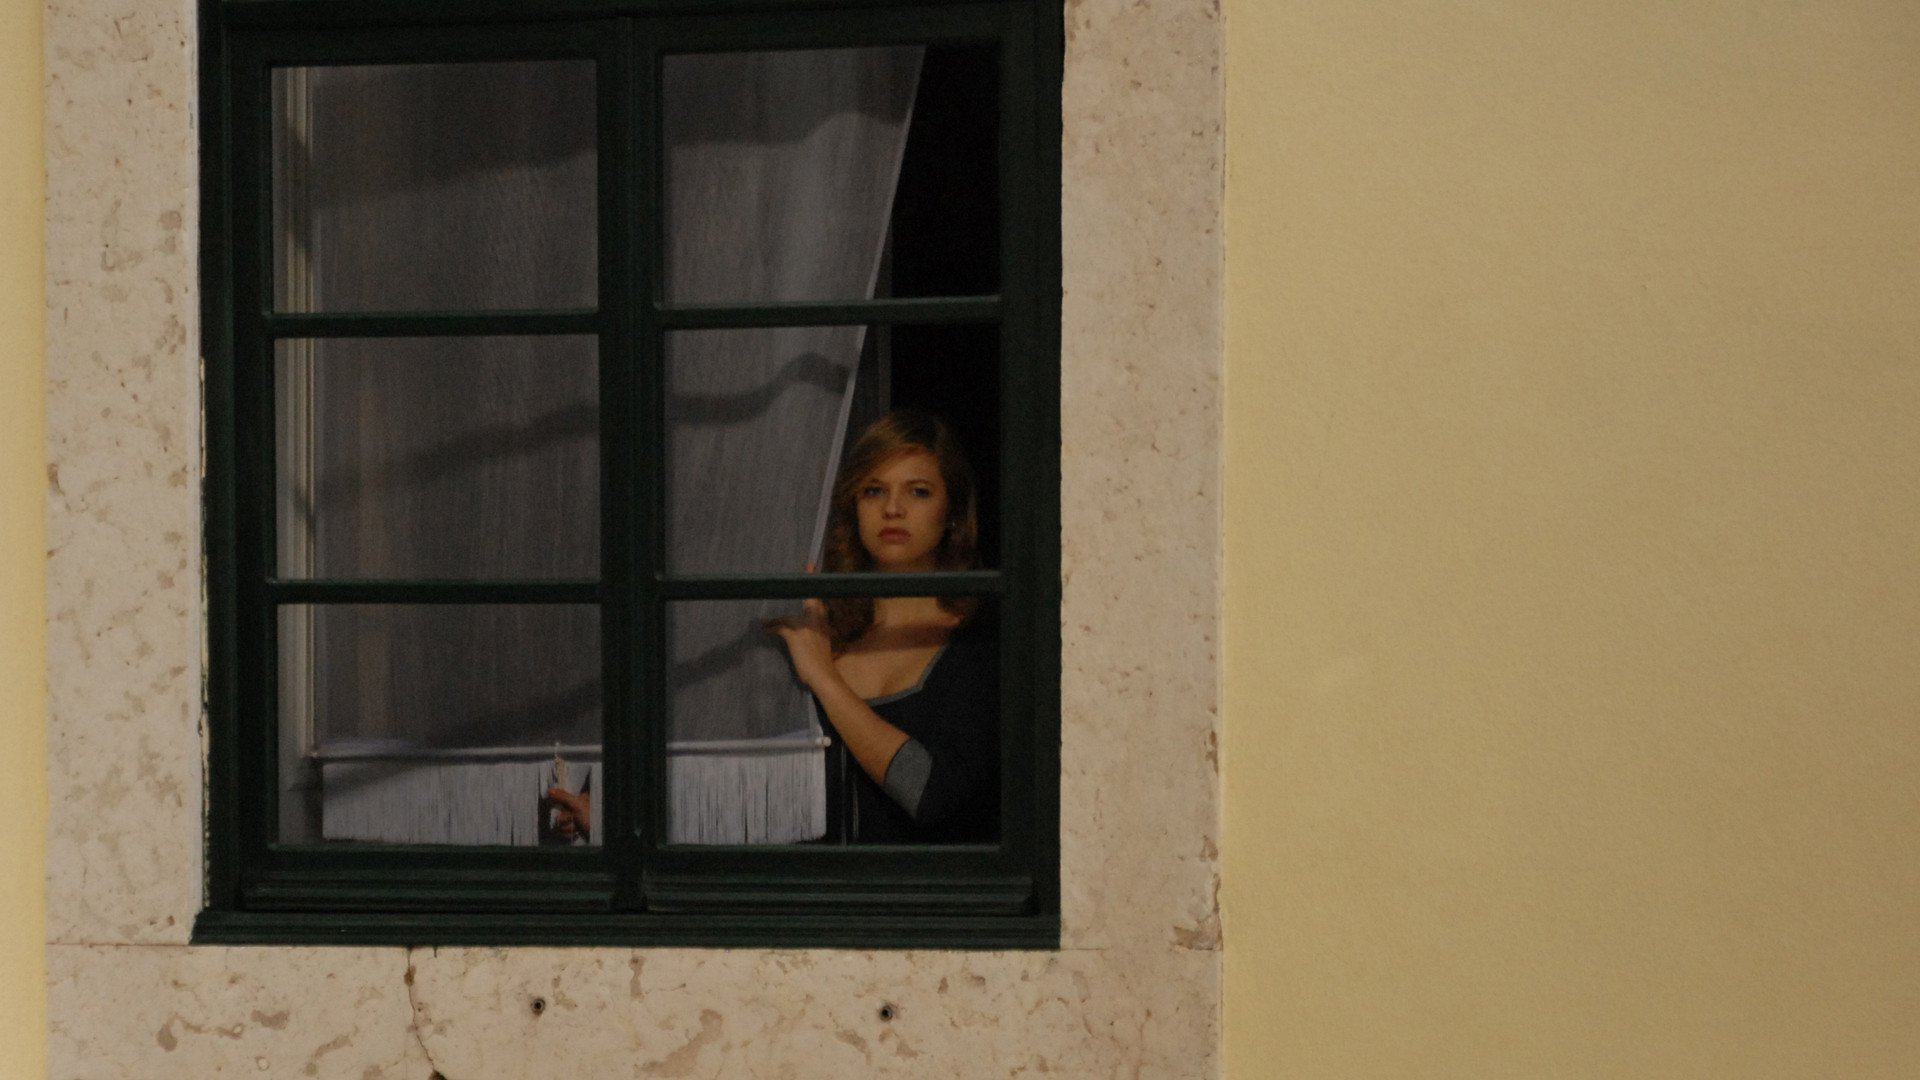 Поймала за подглядыванием. Окна напротив. Девошка в окне на против. Девушка в окне напротив. Заглядывая в окна домов.